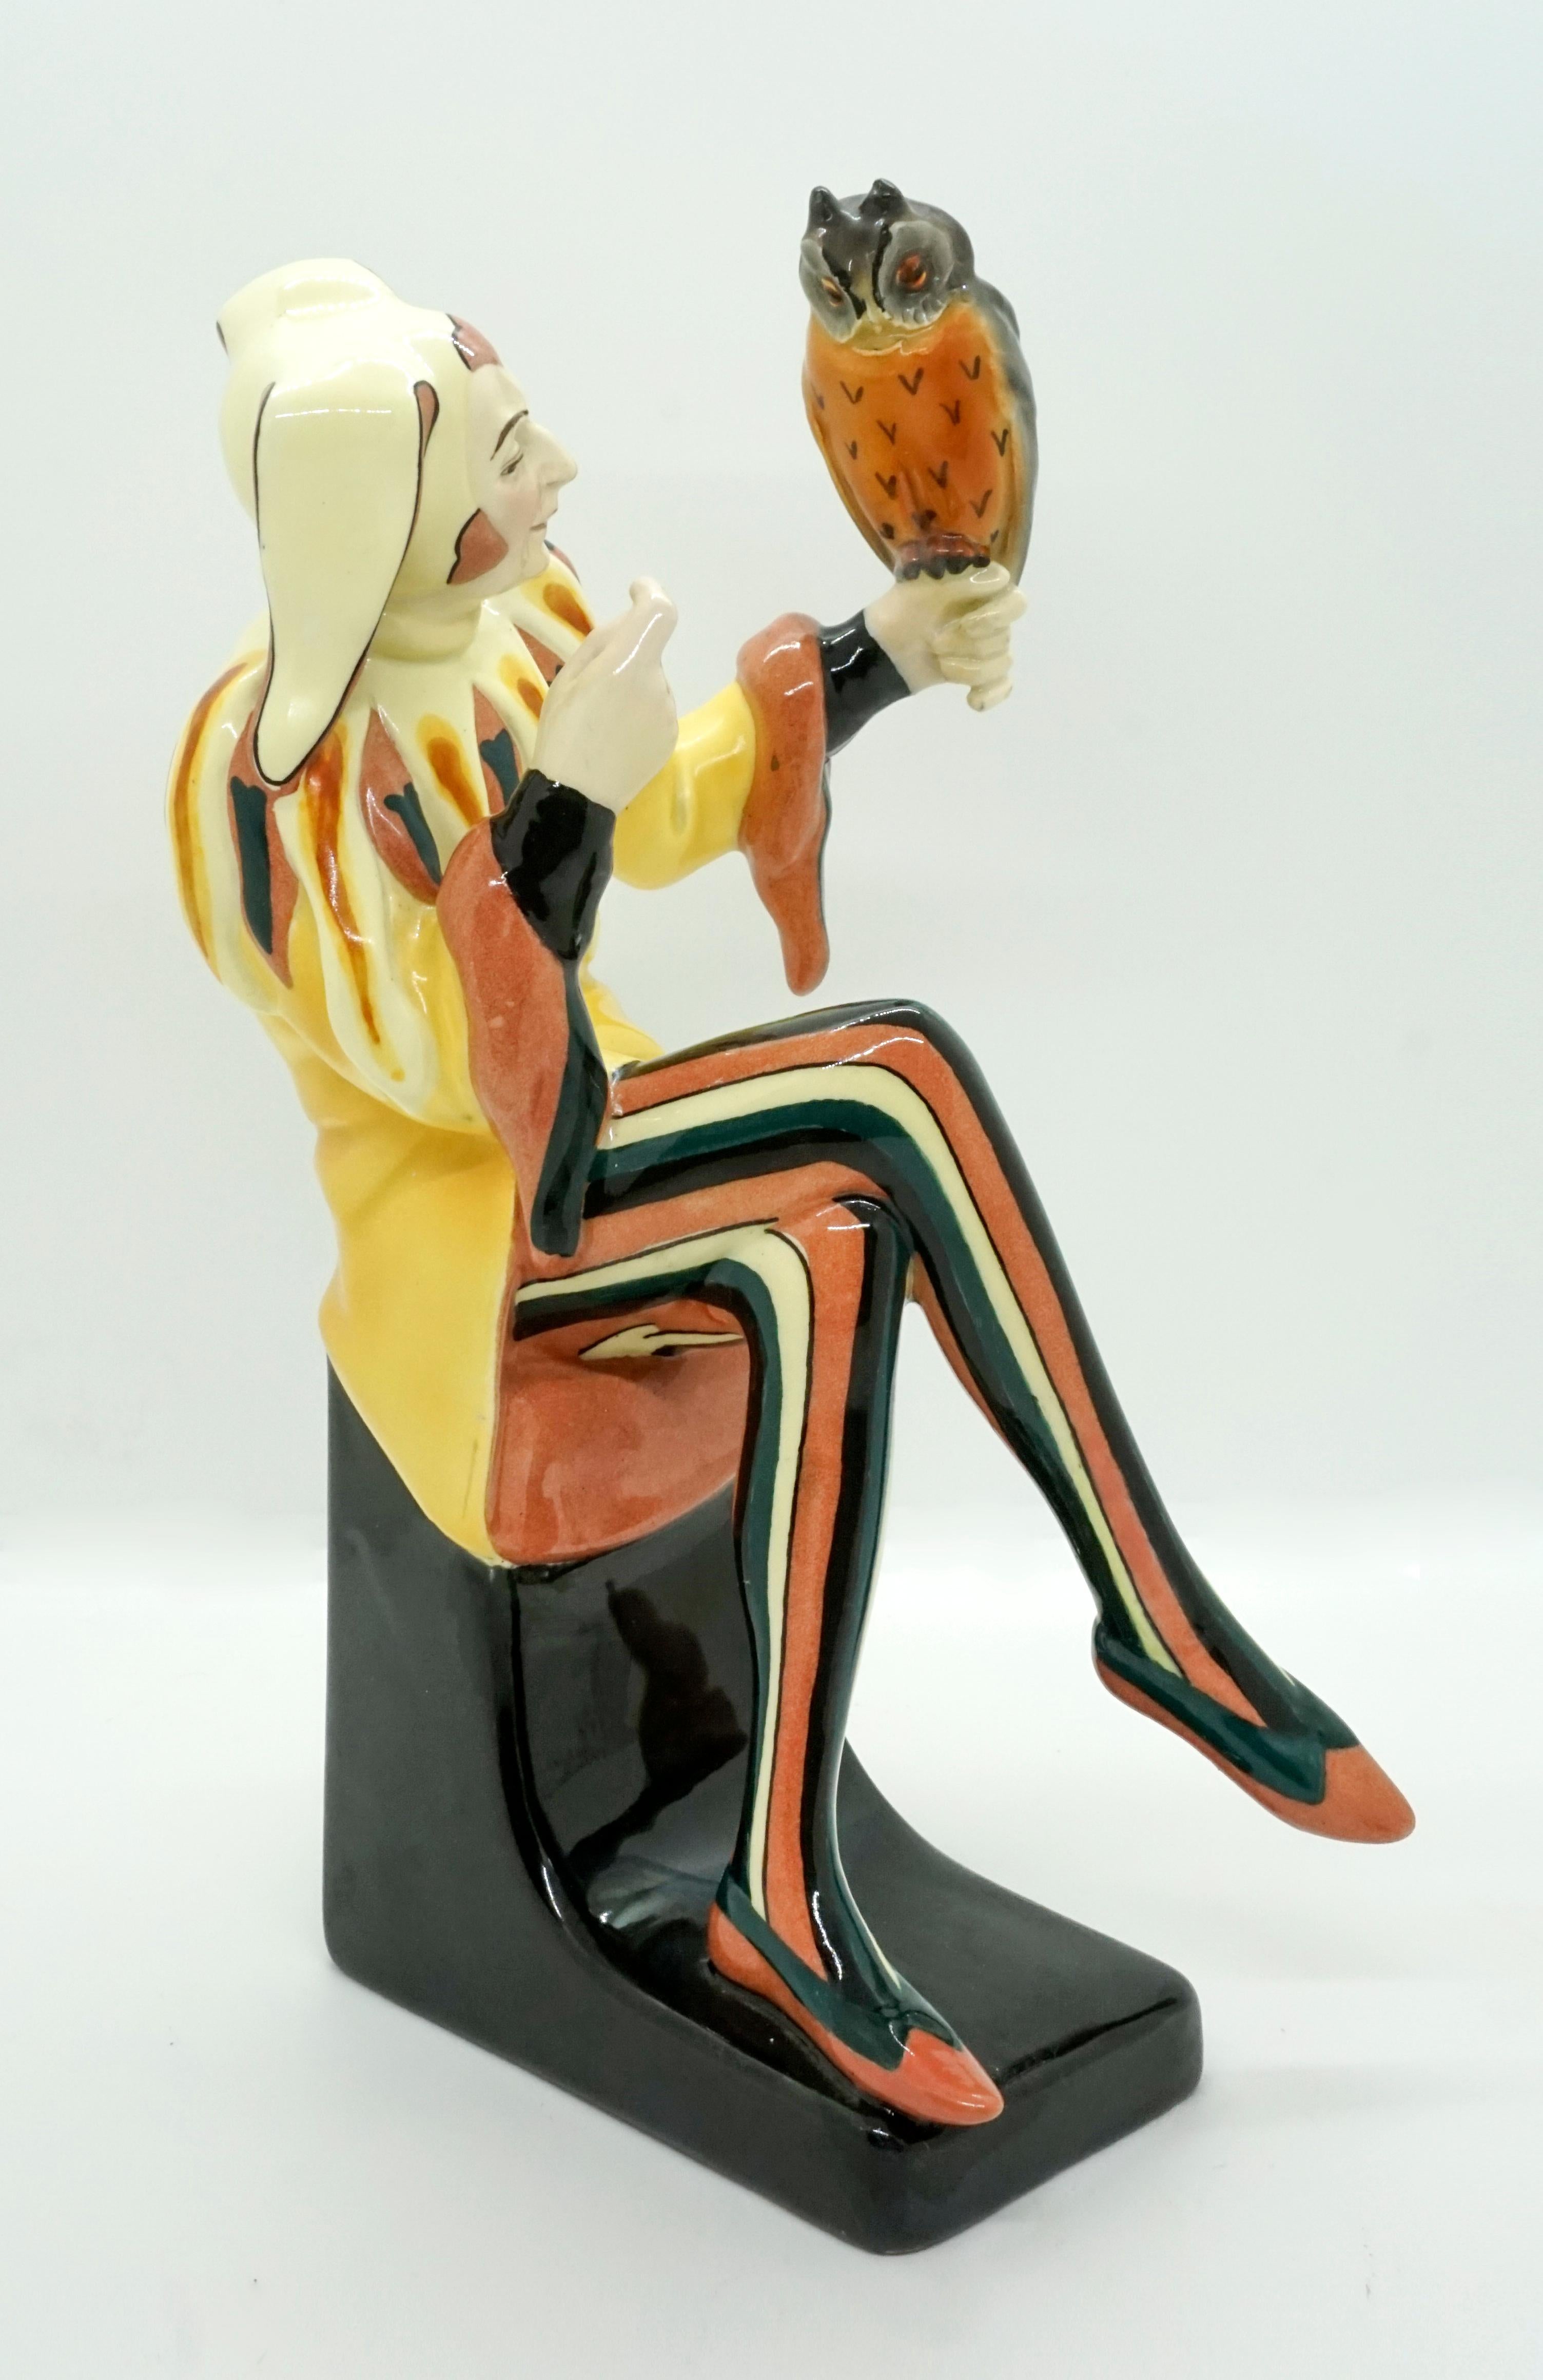 Exceptionnelle figurine Art Déco Goldscheider de Josef Lorenzl.

Conçu par Josef Lorenzl (1892-1950), l'un des plus importants designers ayant travaillé pour la manufacture Goldscheider dans la période 1920-1940.
Le modèle 5193 a été créé en